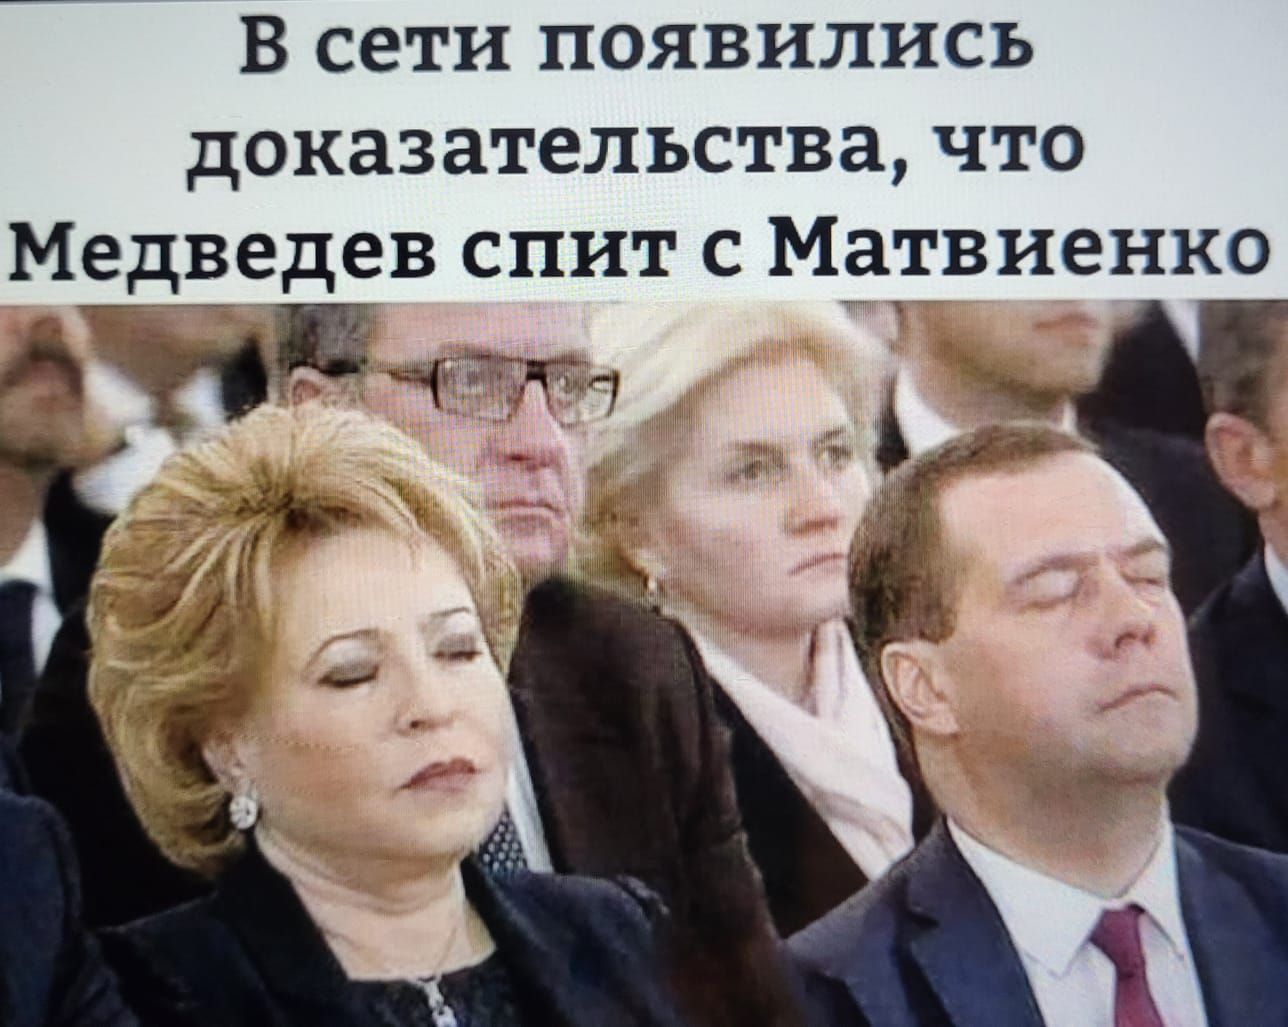 В сети появились доказательства что Медведев спит с Матвиенко